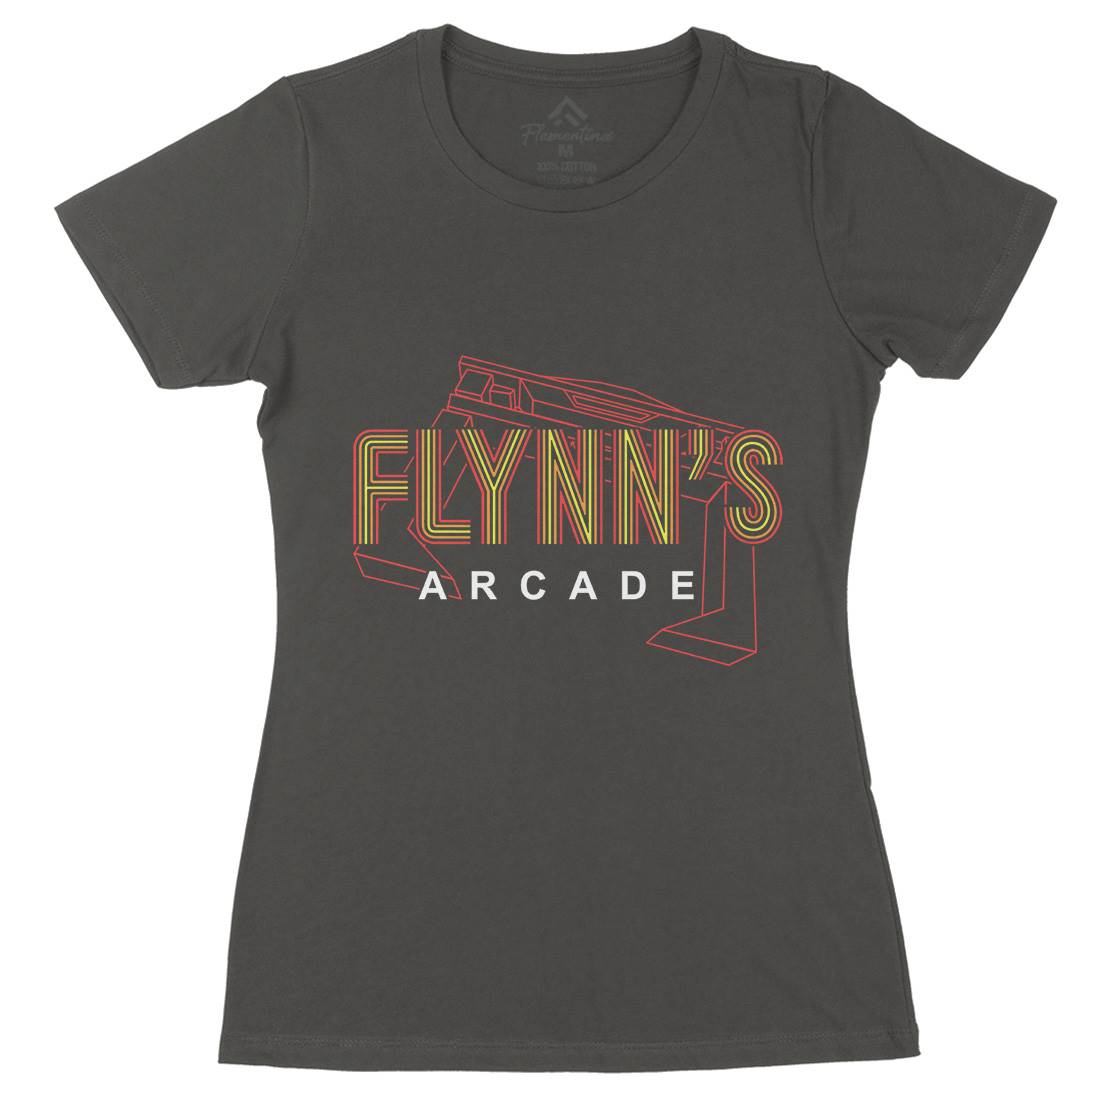 Flynns Arcade Womens Organic Crew Neck T-Shirt Space D154